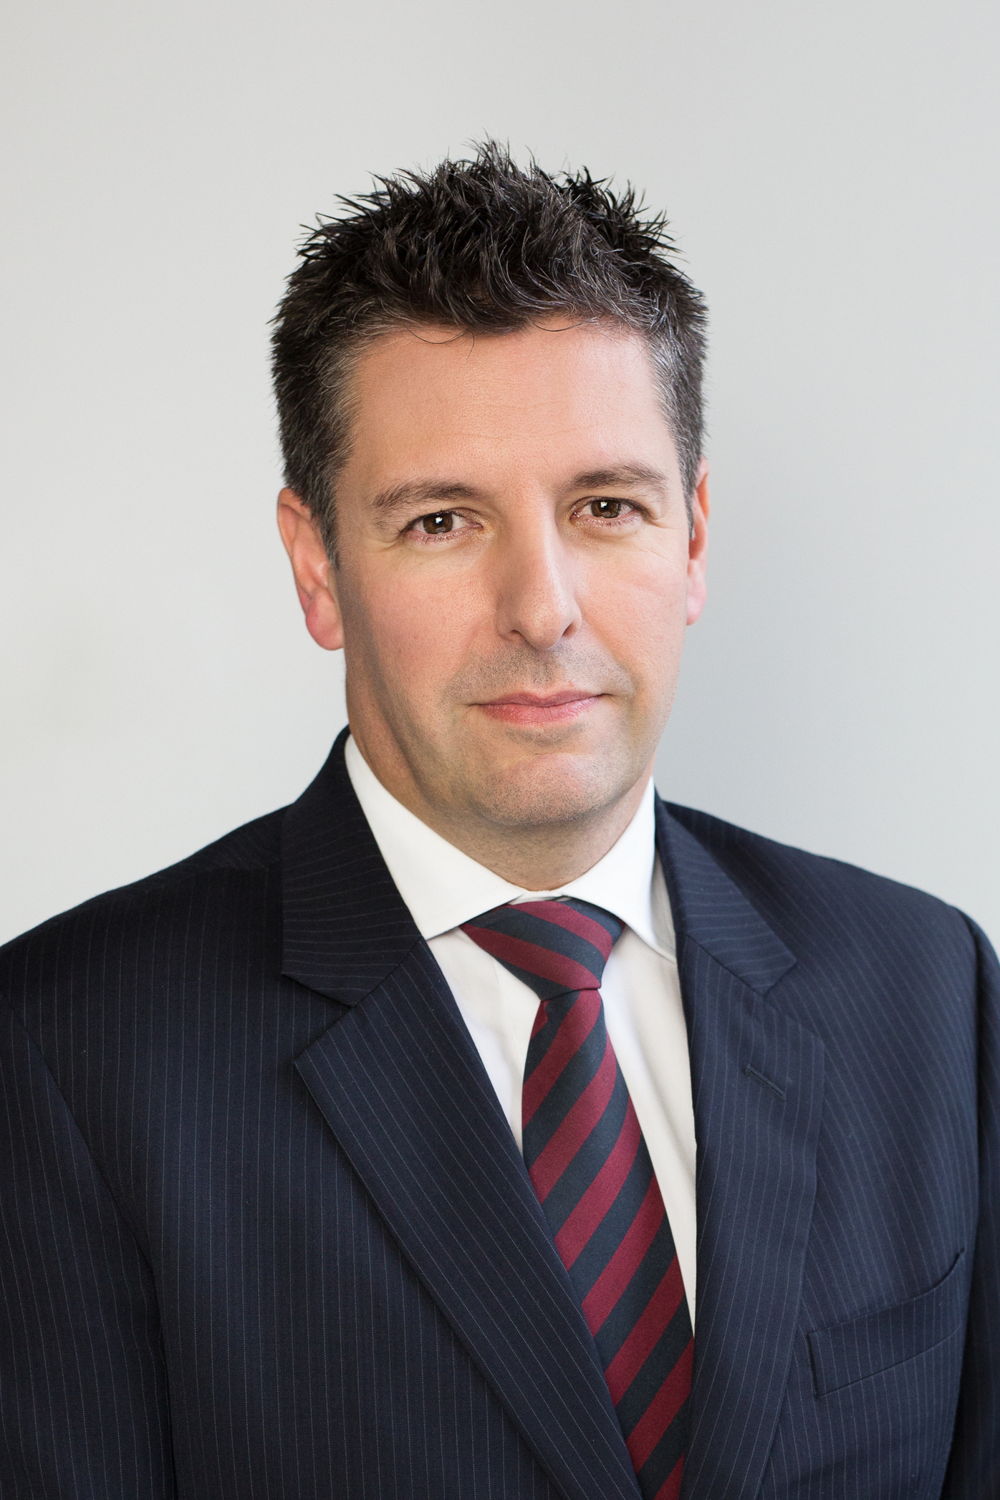 Richard Keery, generální ředitel HSBC Bank plc – pobočka Praha